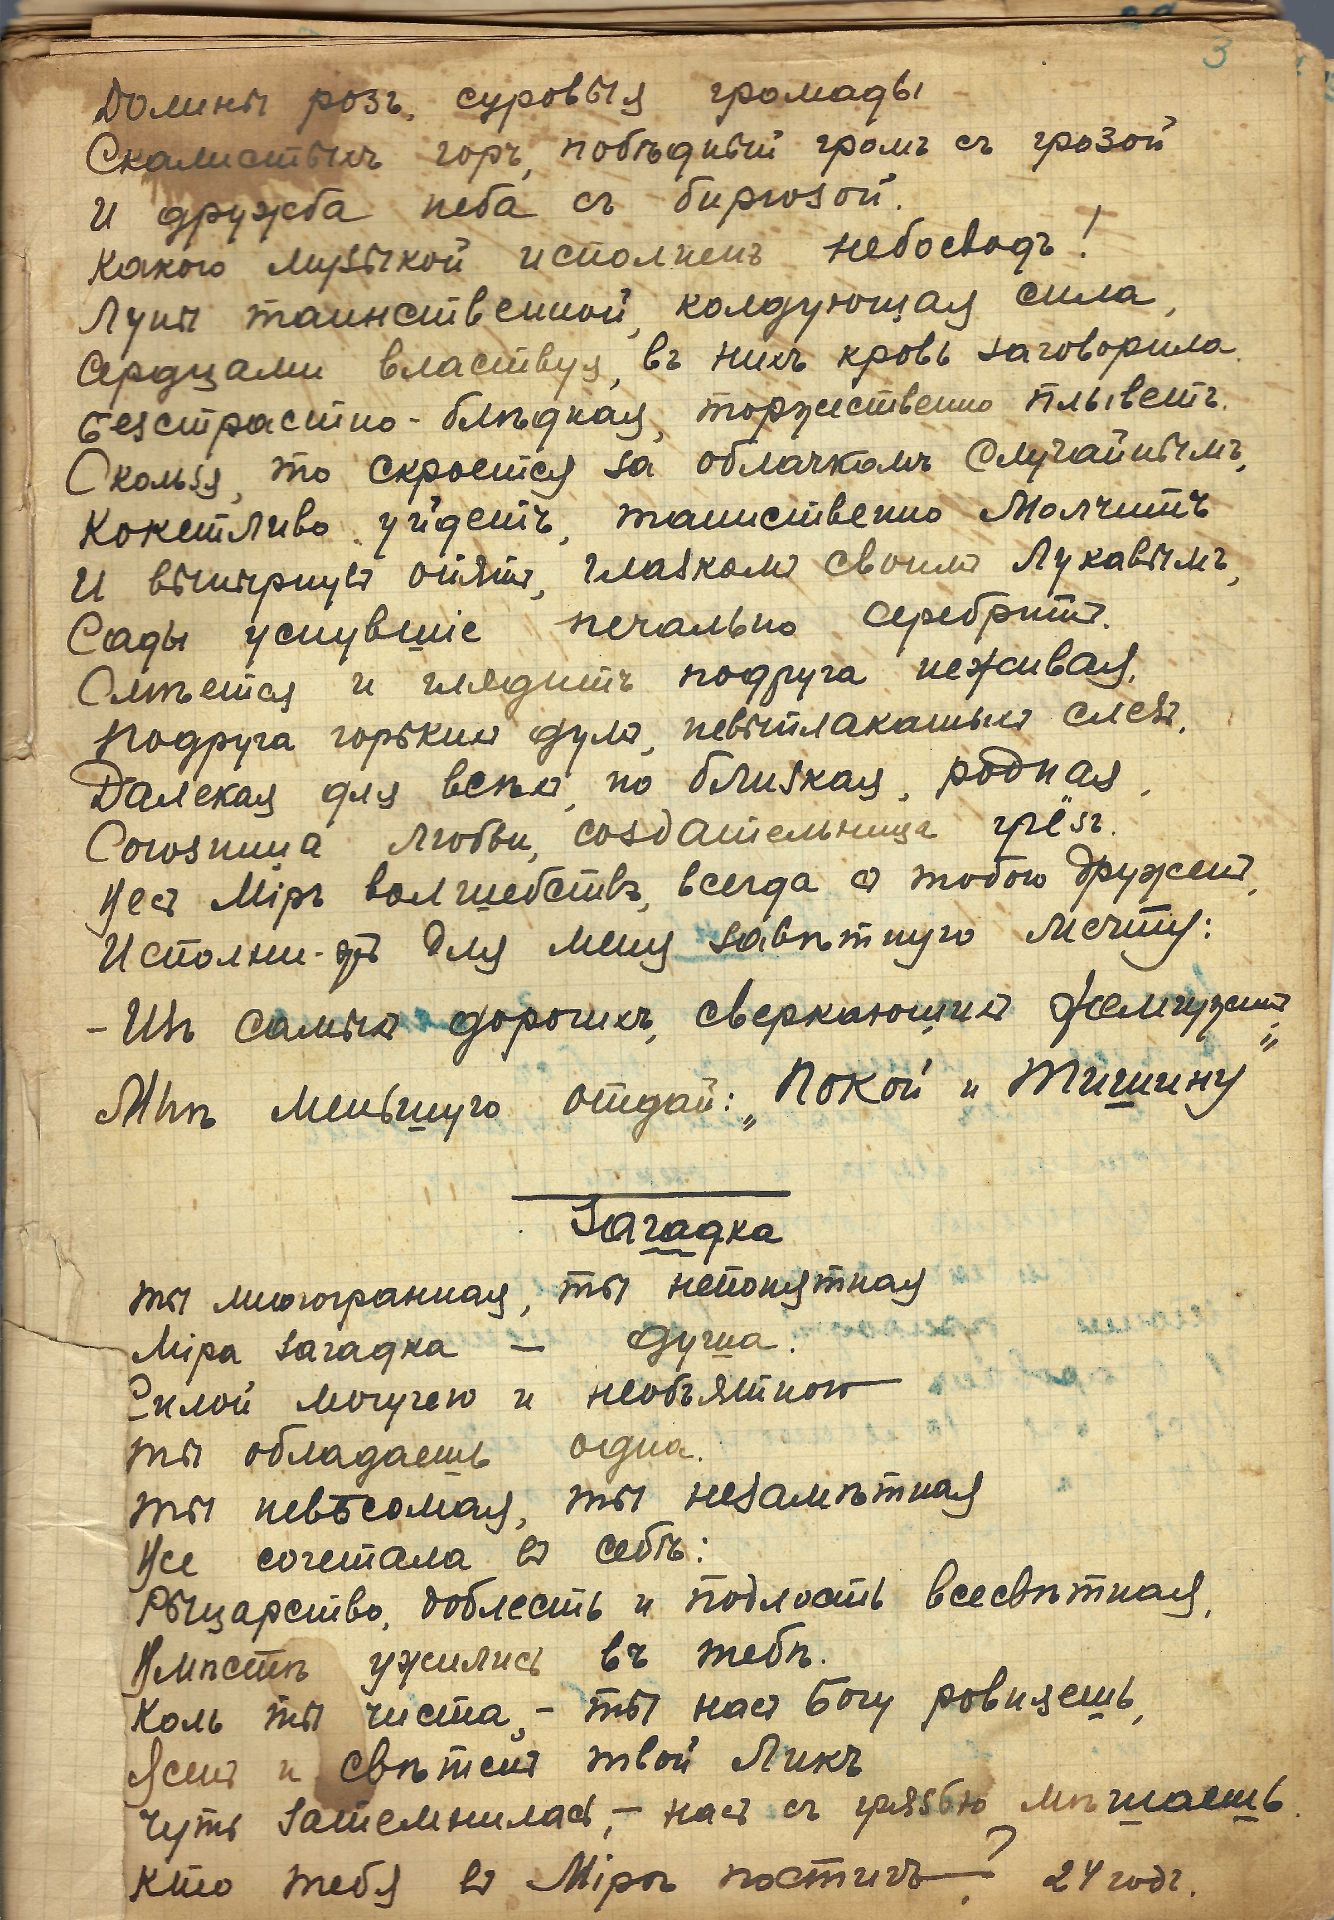 ARCHIVES d’Andreï BALASHOV (1889-1969) • Correspondances avec E.Isakova, M.Kolosovski, N.Keppen. - Bild 25 aus 26